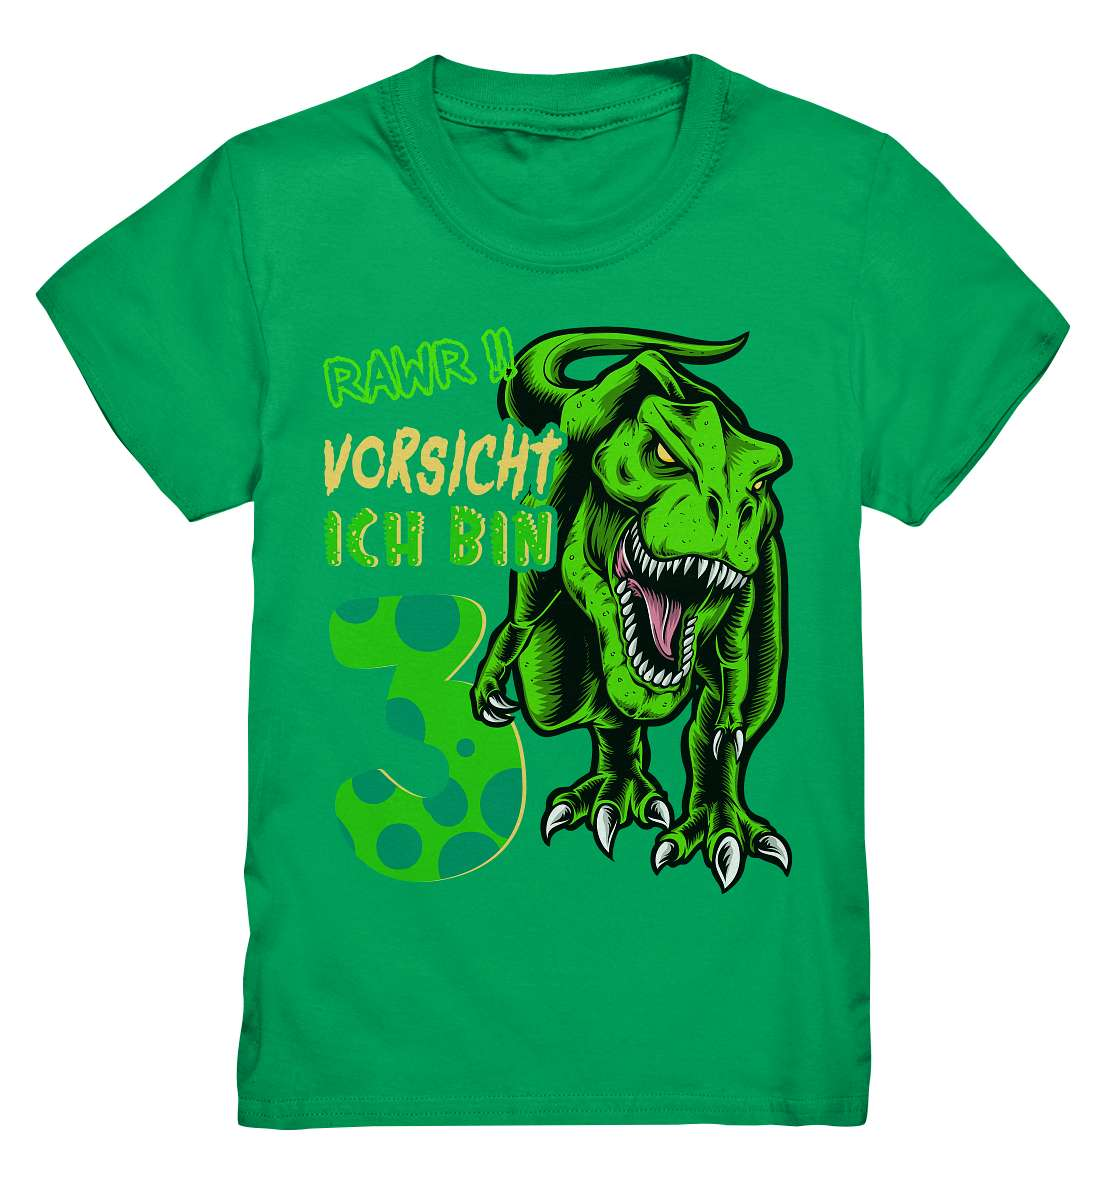 3. Kinder Geburtstag - T-REX Dinosaurier - Ich bin 3 Jahre - Geschenk - Kids Premium Shirt